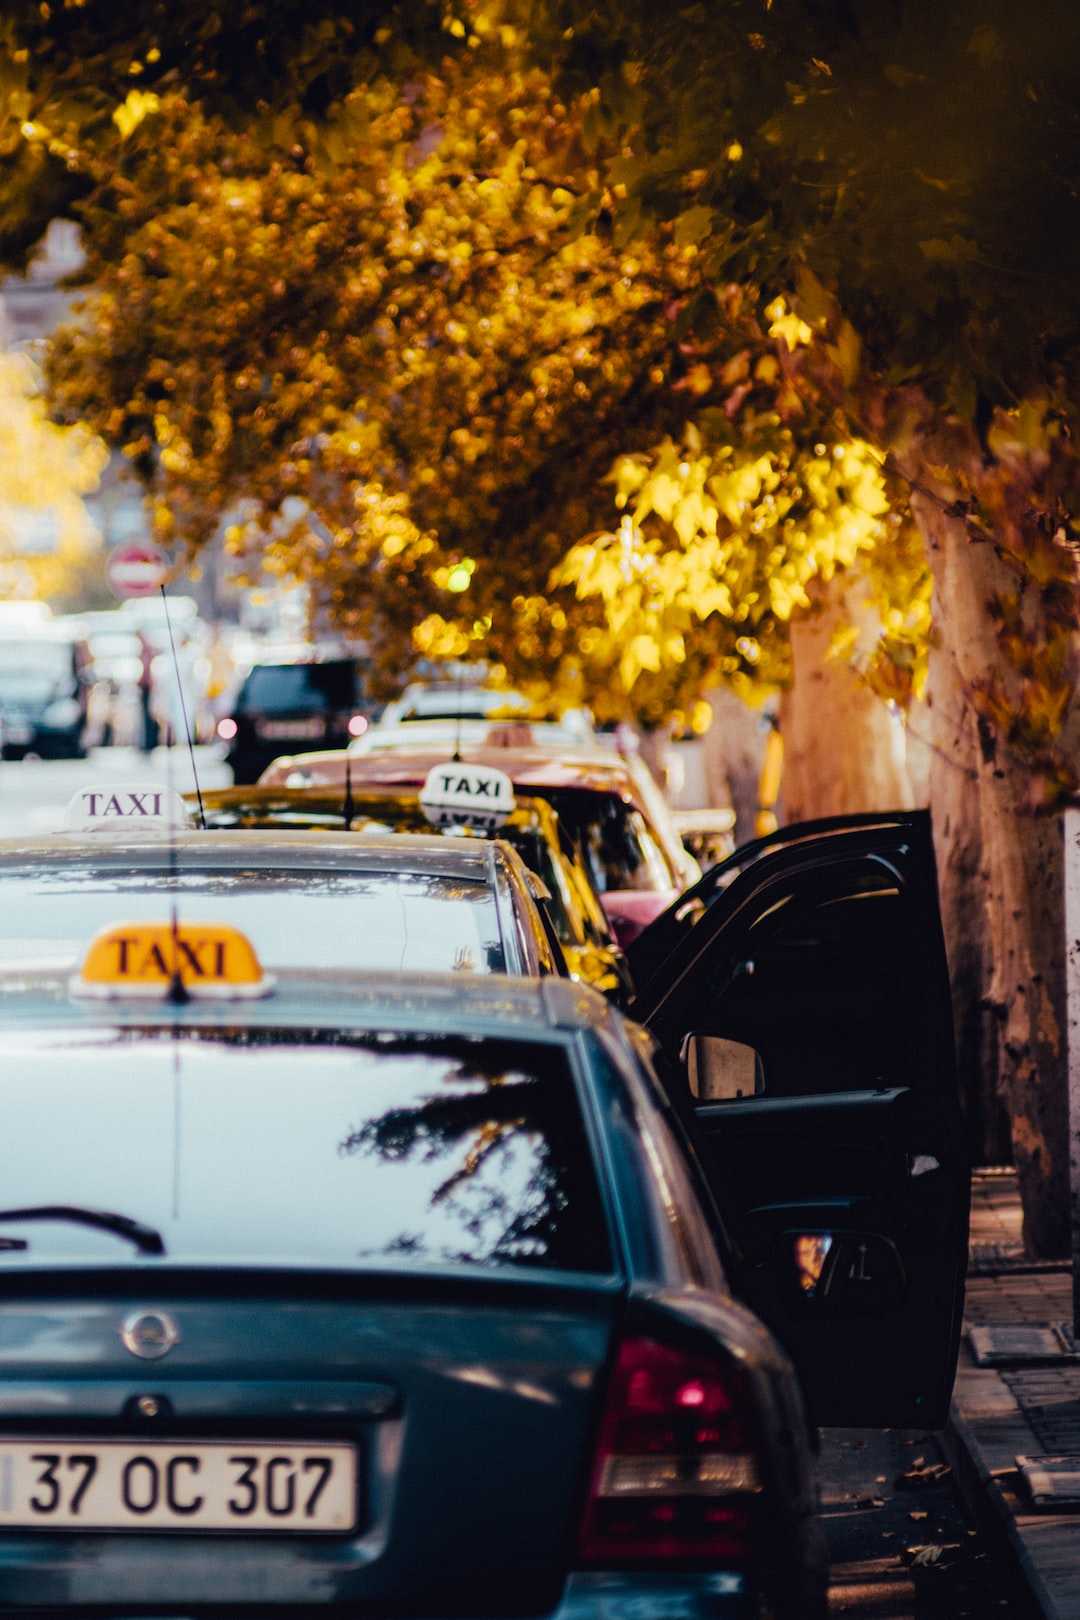 Comment faire taxi sans licence ?